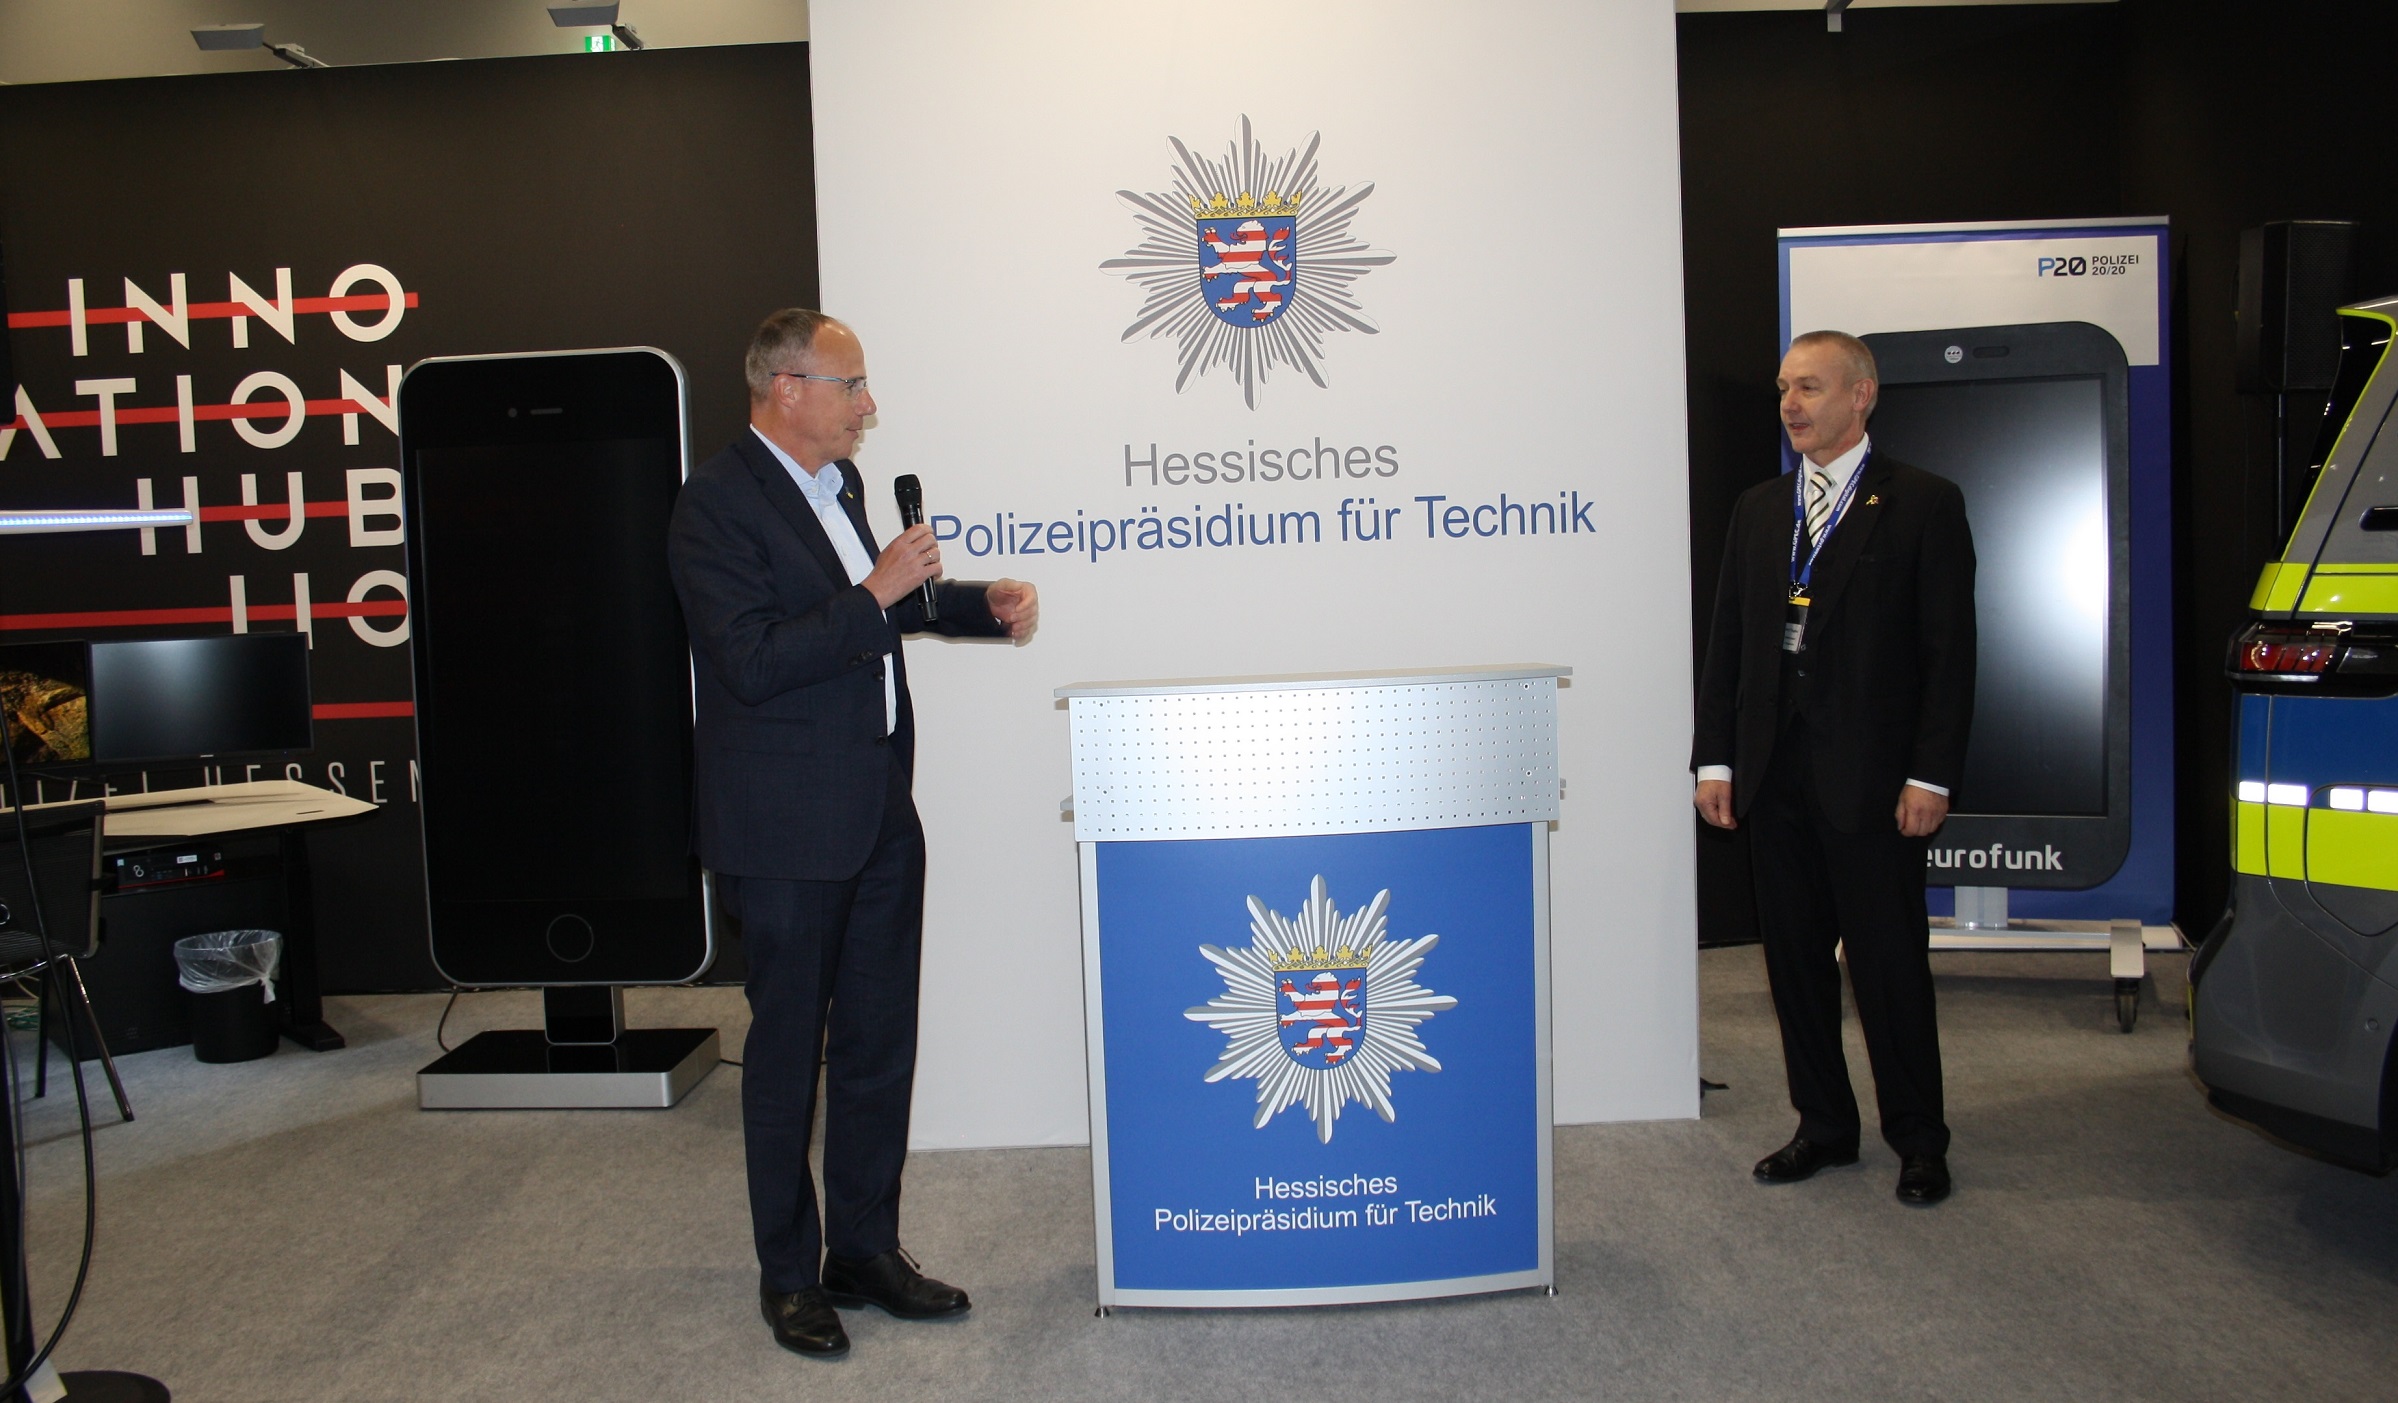 Grußwort des Schirmherren Innenminister Peter Beuth am Messestand des Innovation Hub 110 der Hessischen Polizei